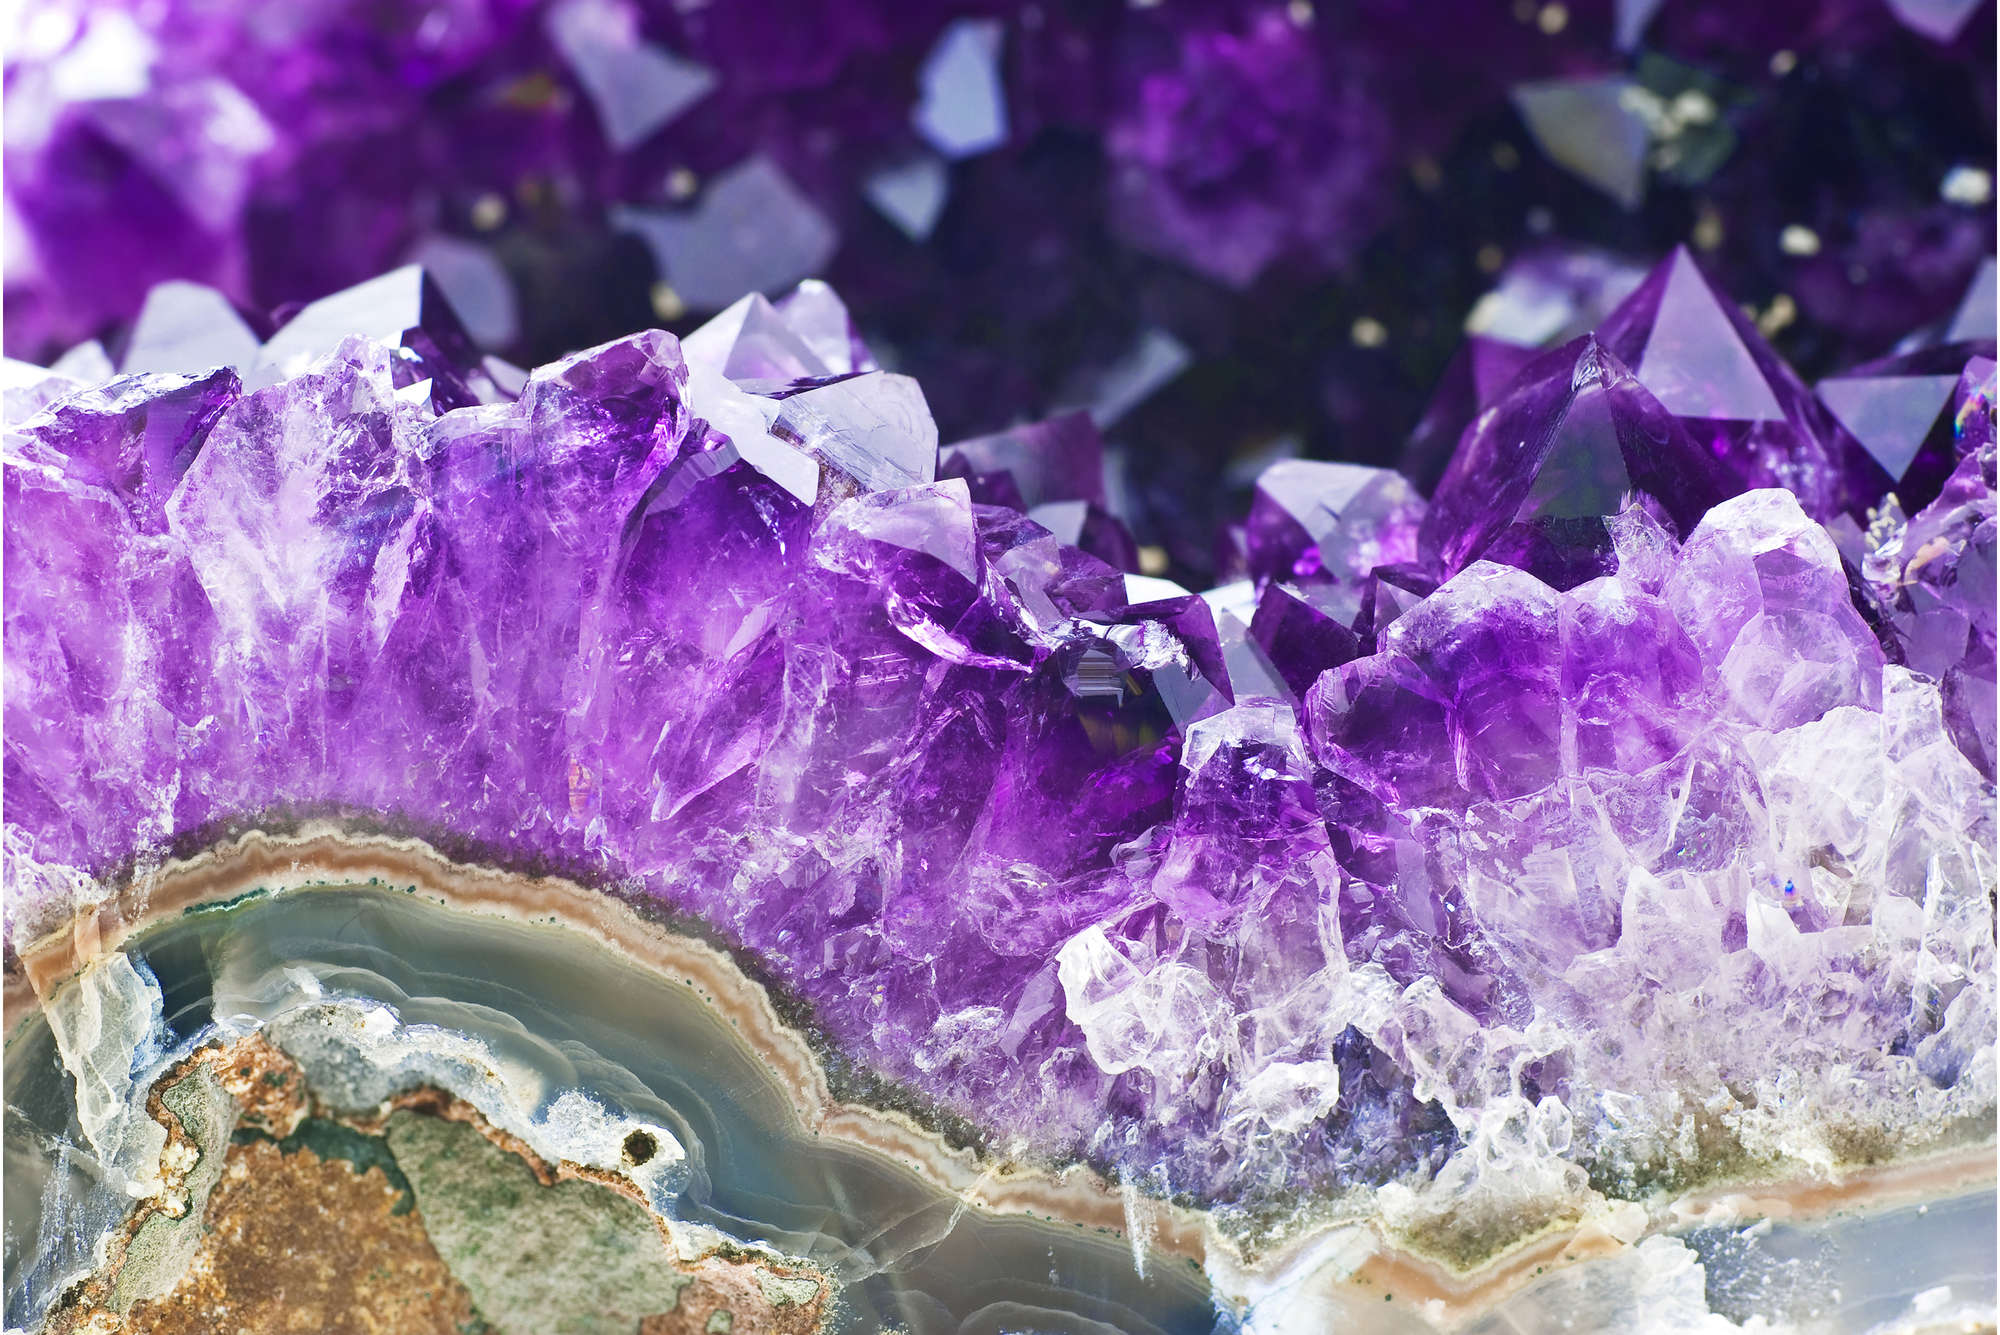             Fototapete Amethyst und Kristalle in Lila – Premium Glattvlies
        